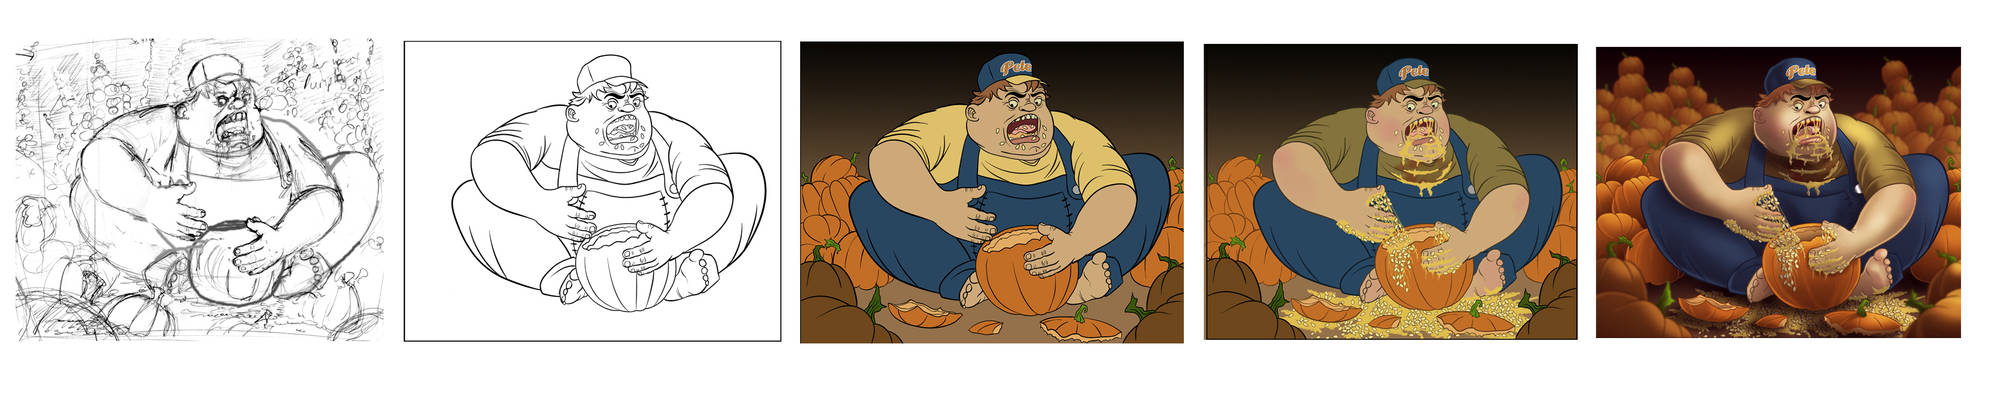 Pumpkin Peter: Process